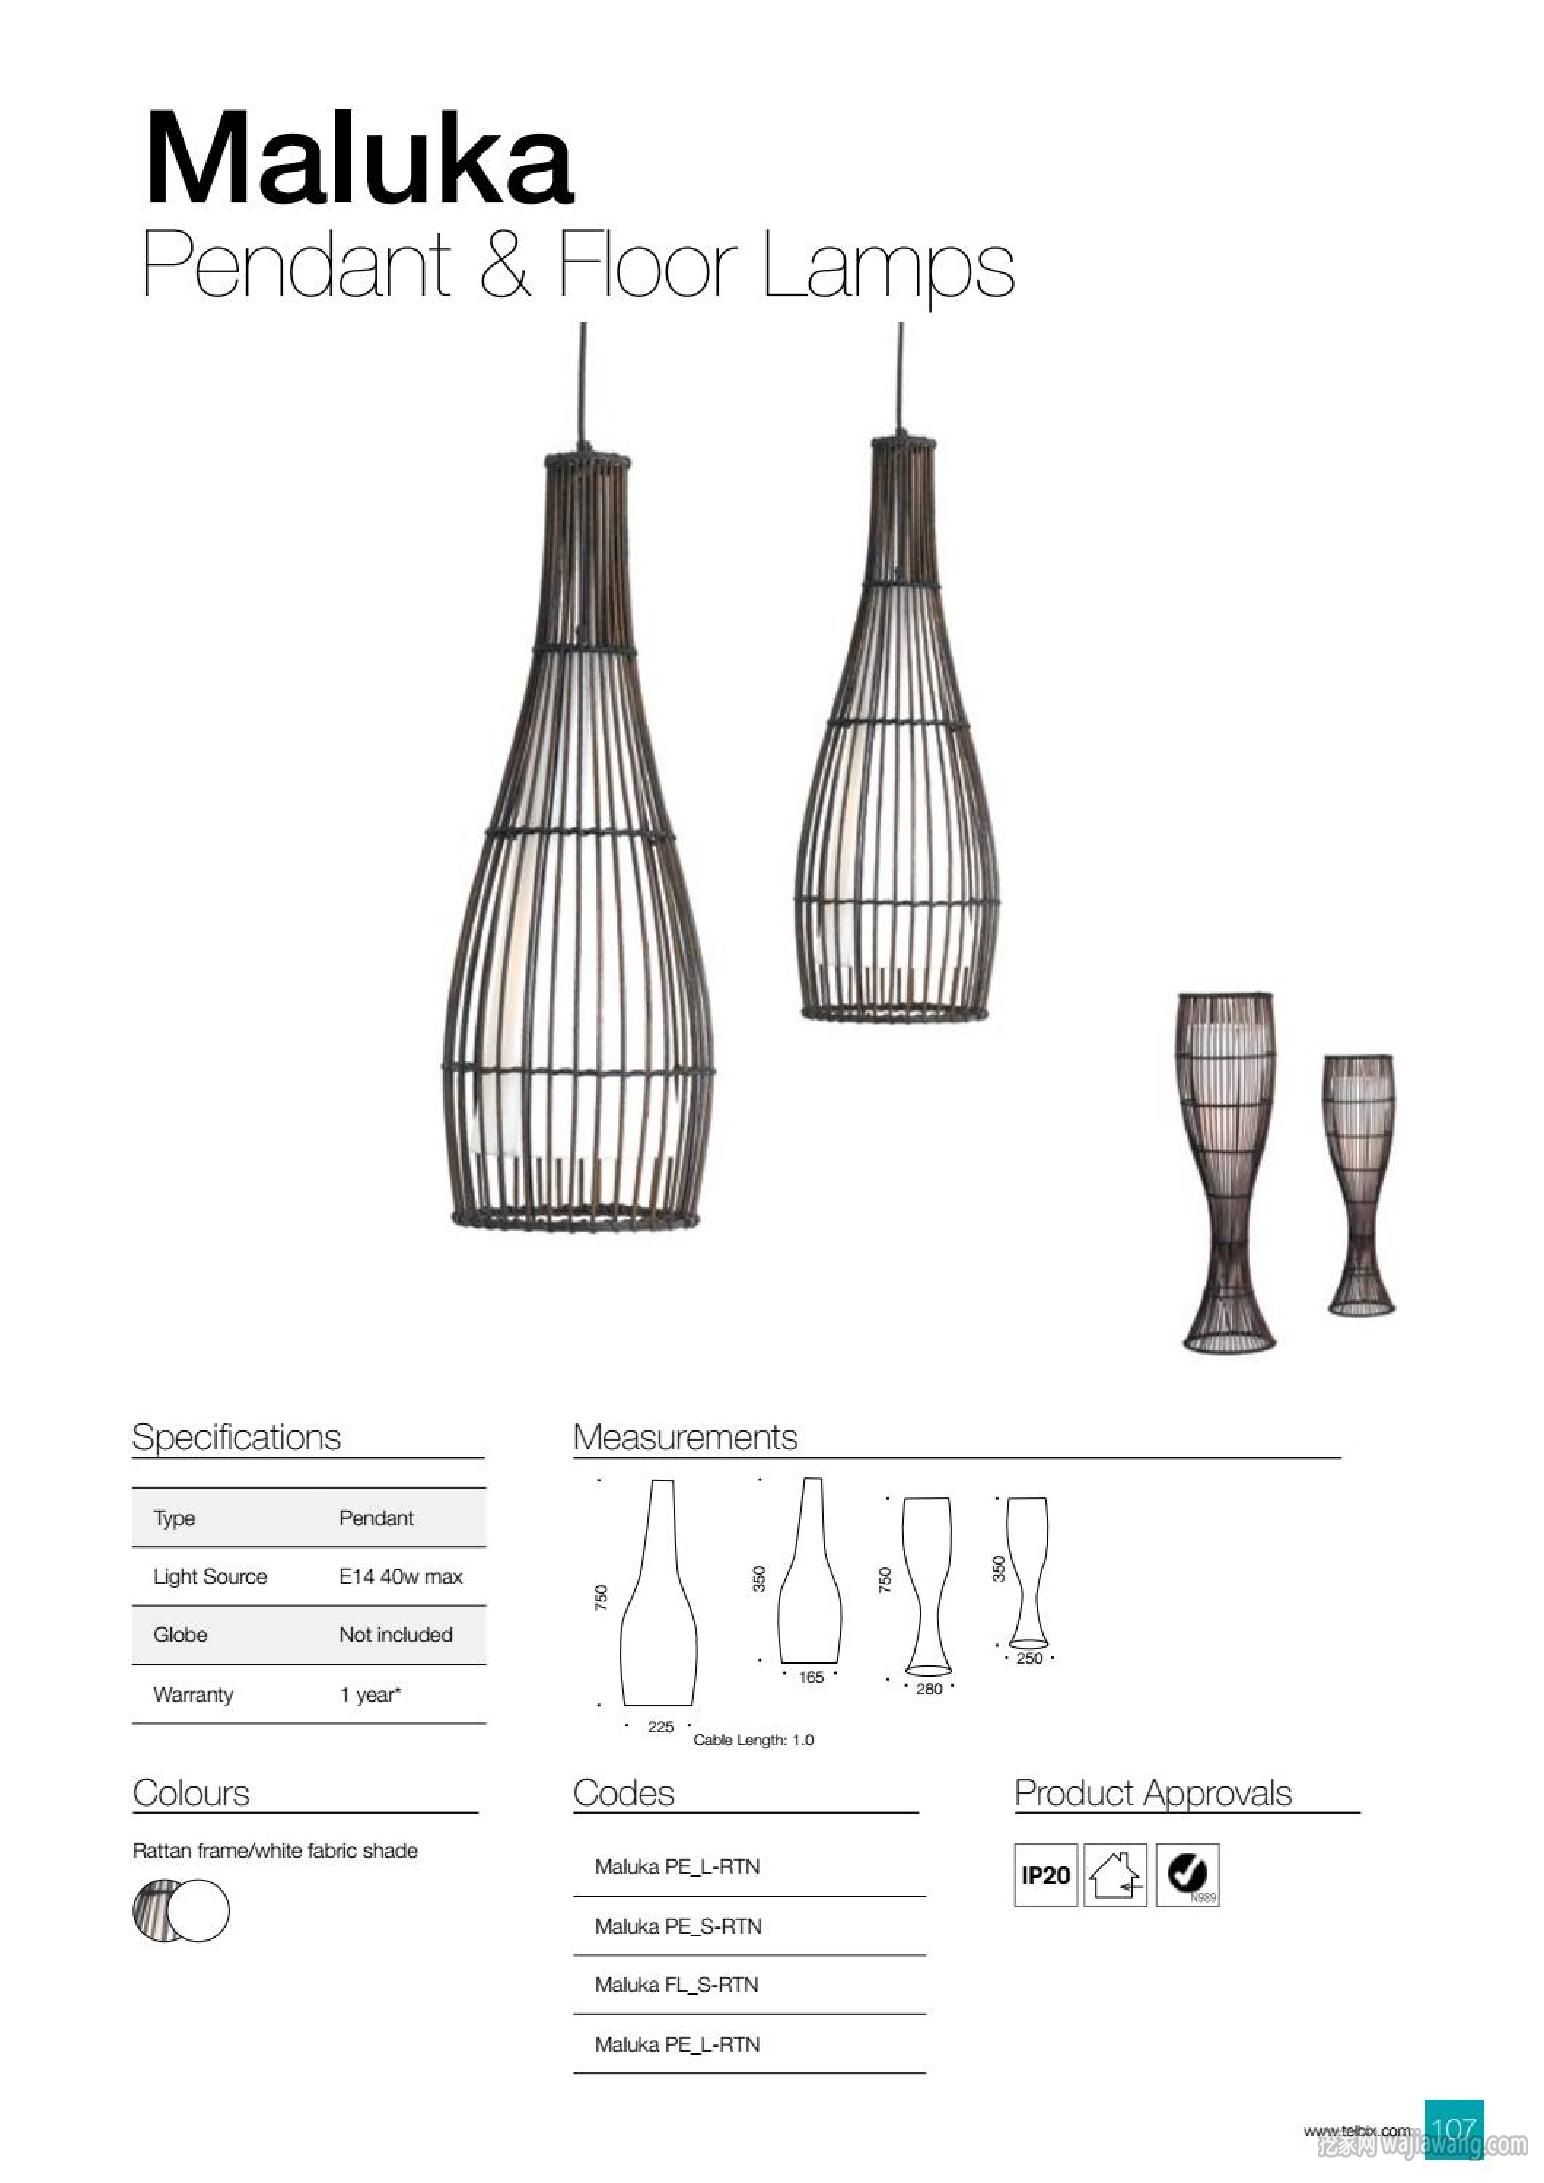 灯饰设计 Telbix 2017年欧美现代灯饰灯具设计(图)